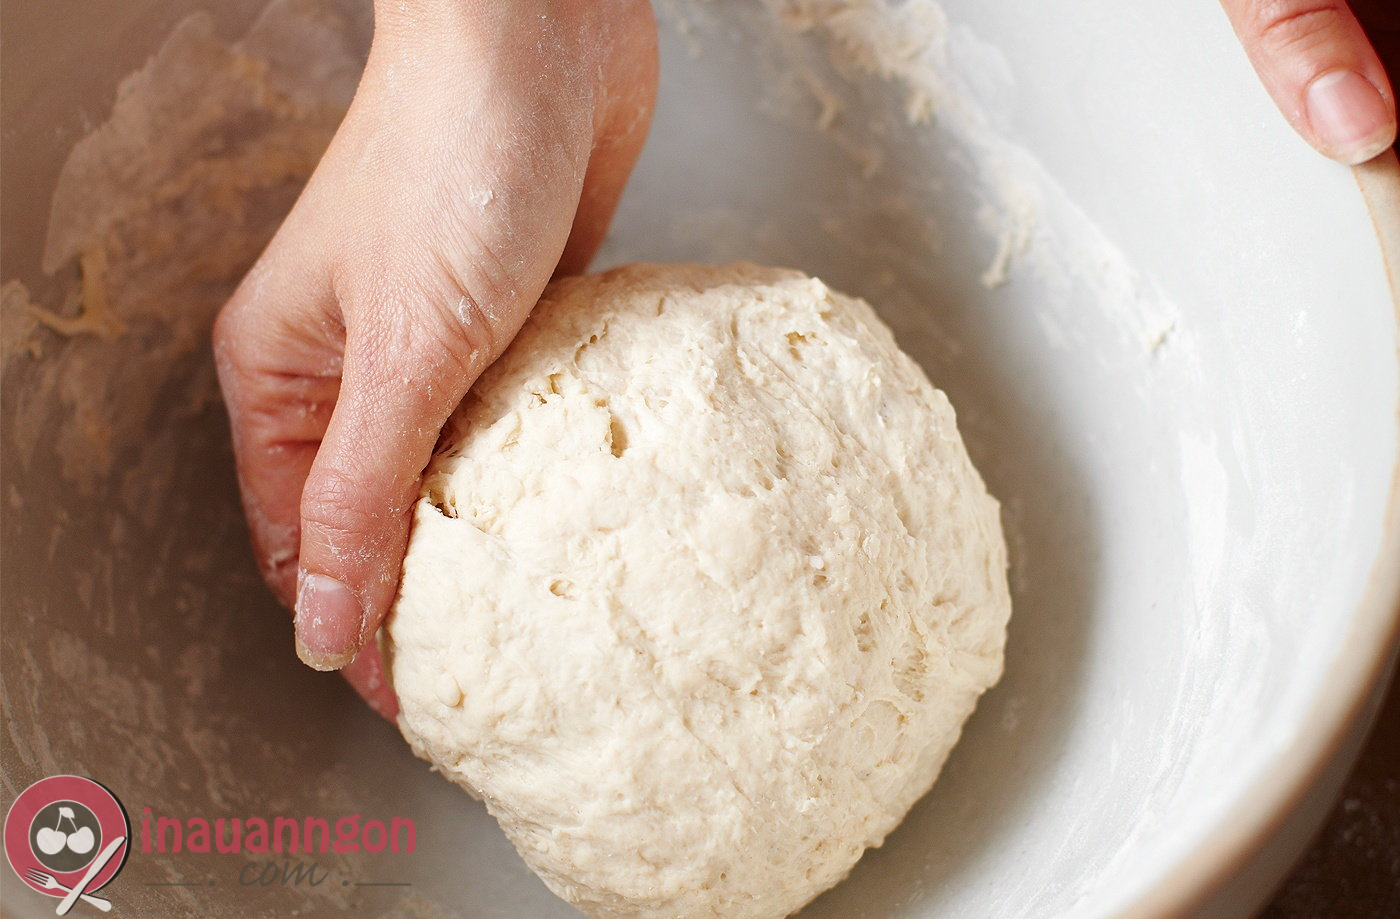 Nhồi bột là công đoạn quan trọng quyết định chất lượng của bánh bao